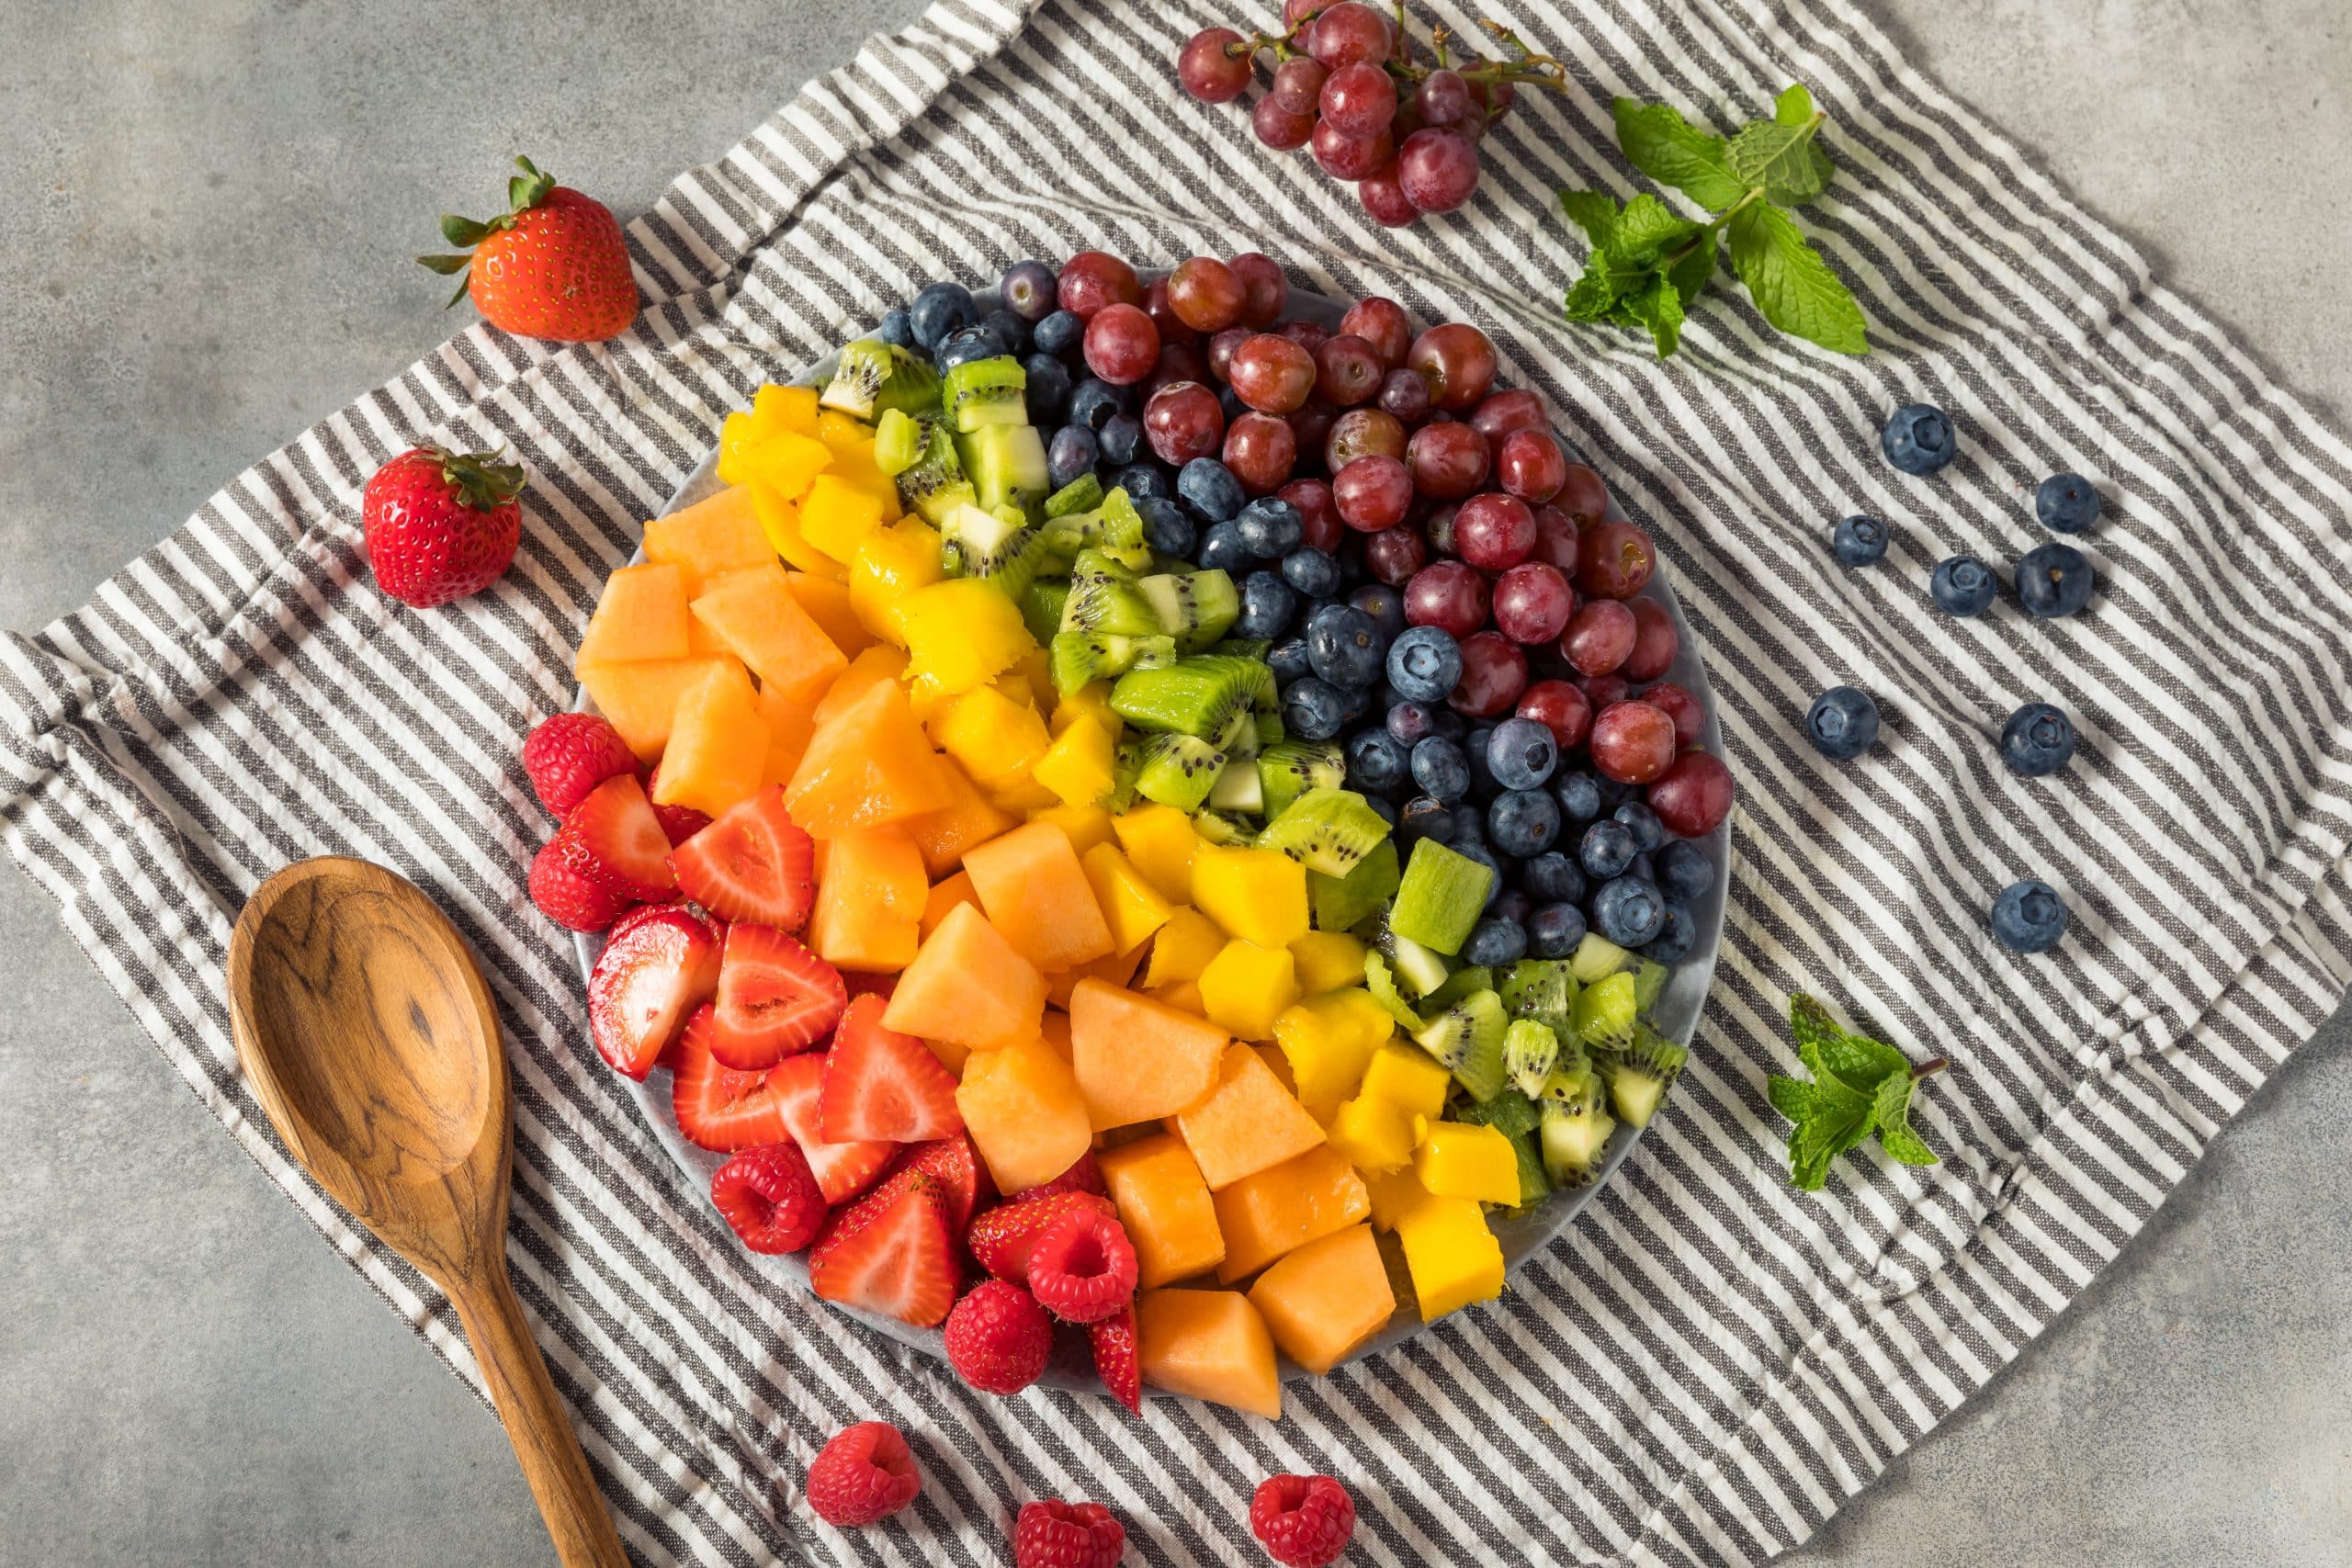 o consumo de um arco-íris de frutas e vegetais pode trazer inúmeros benefícios a saúde.